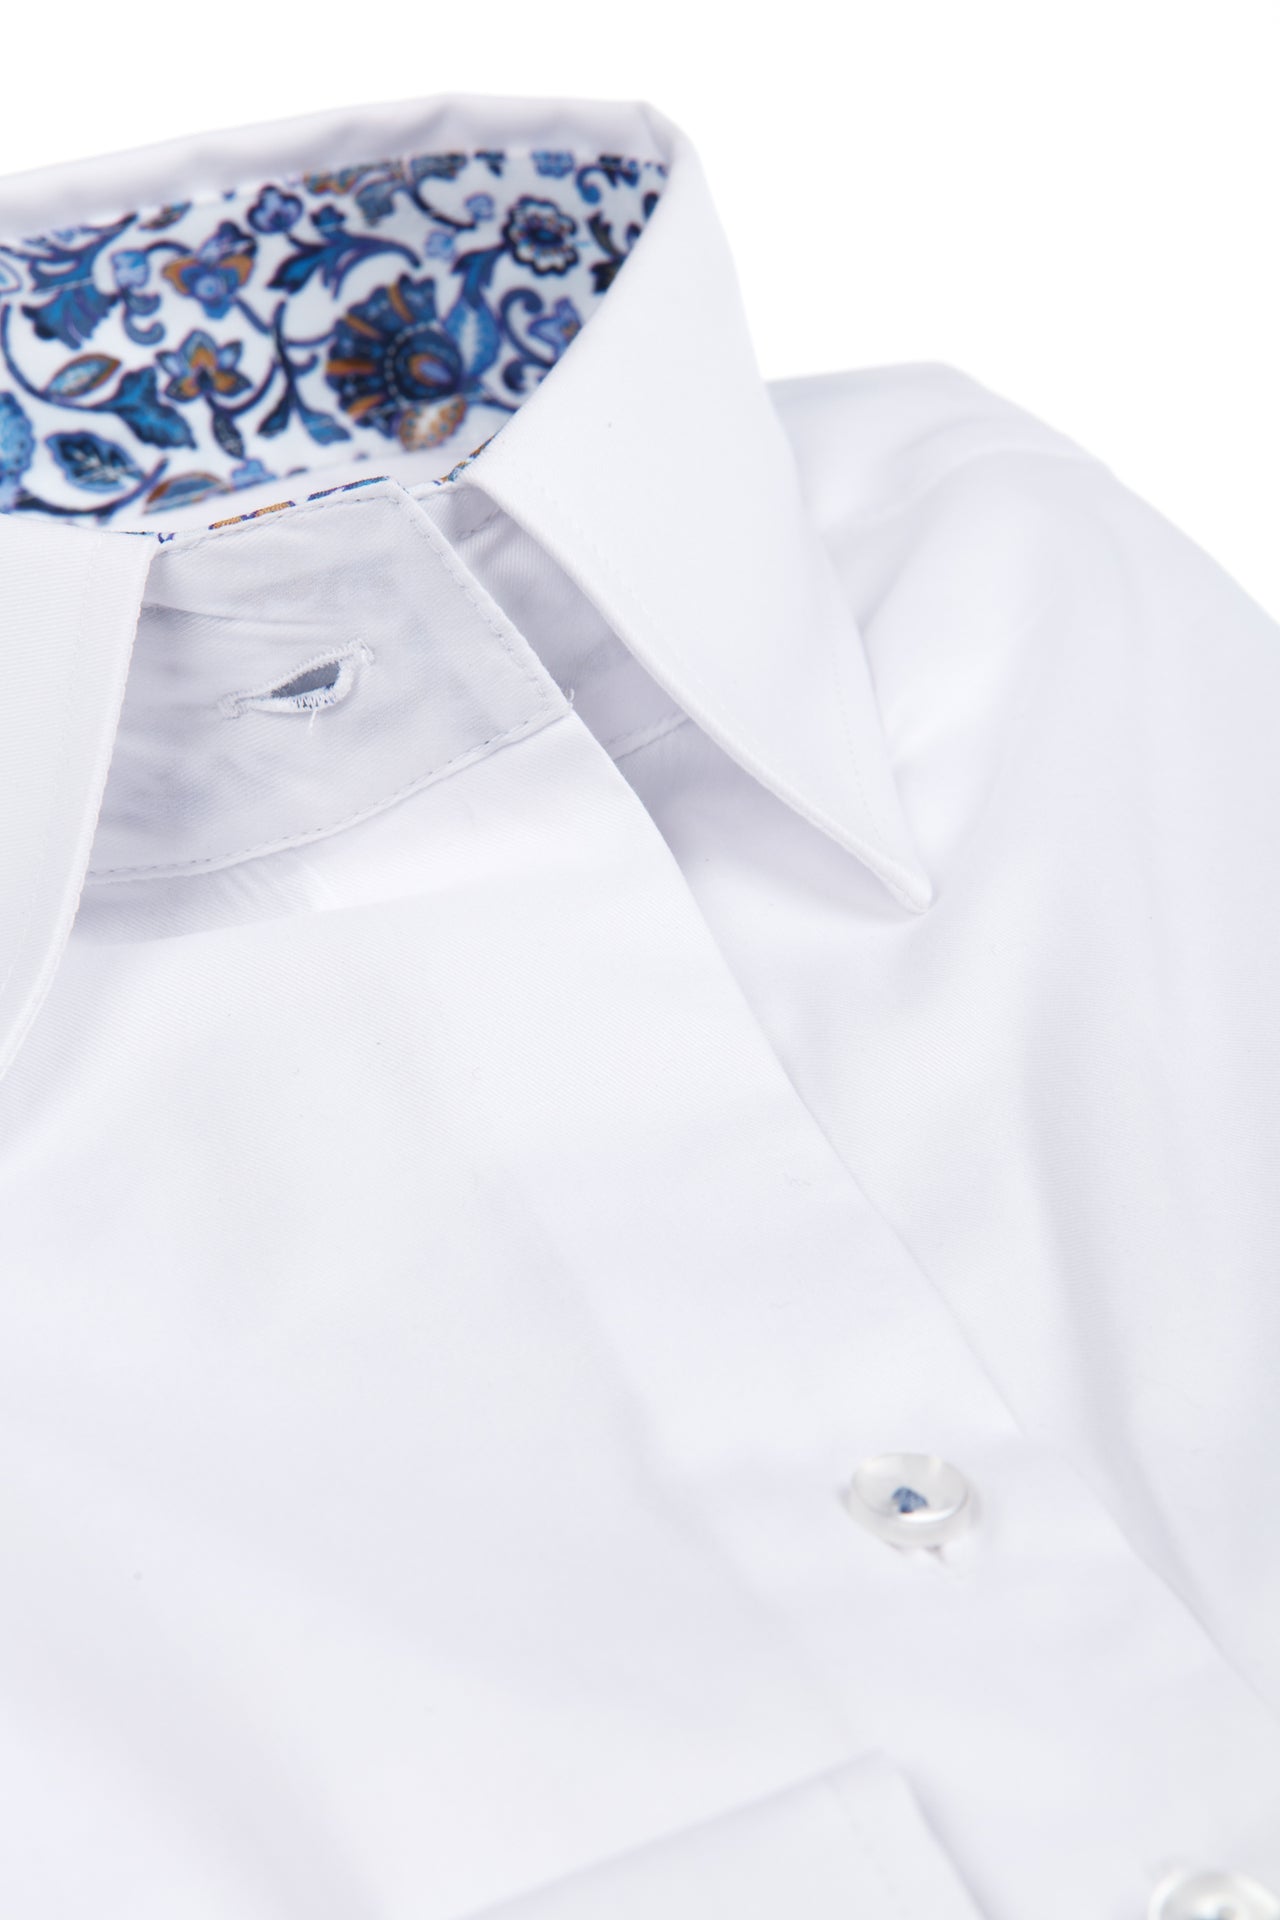 Witte bloes met blauwe paisley print